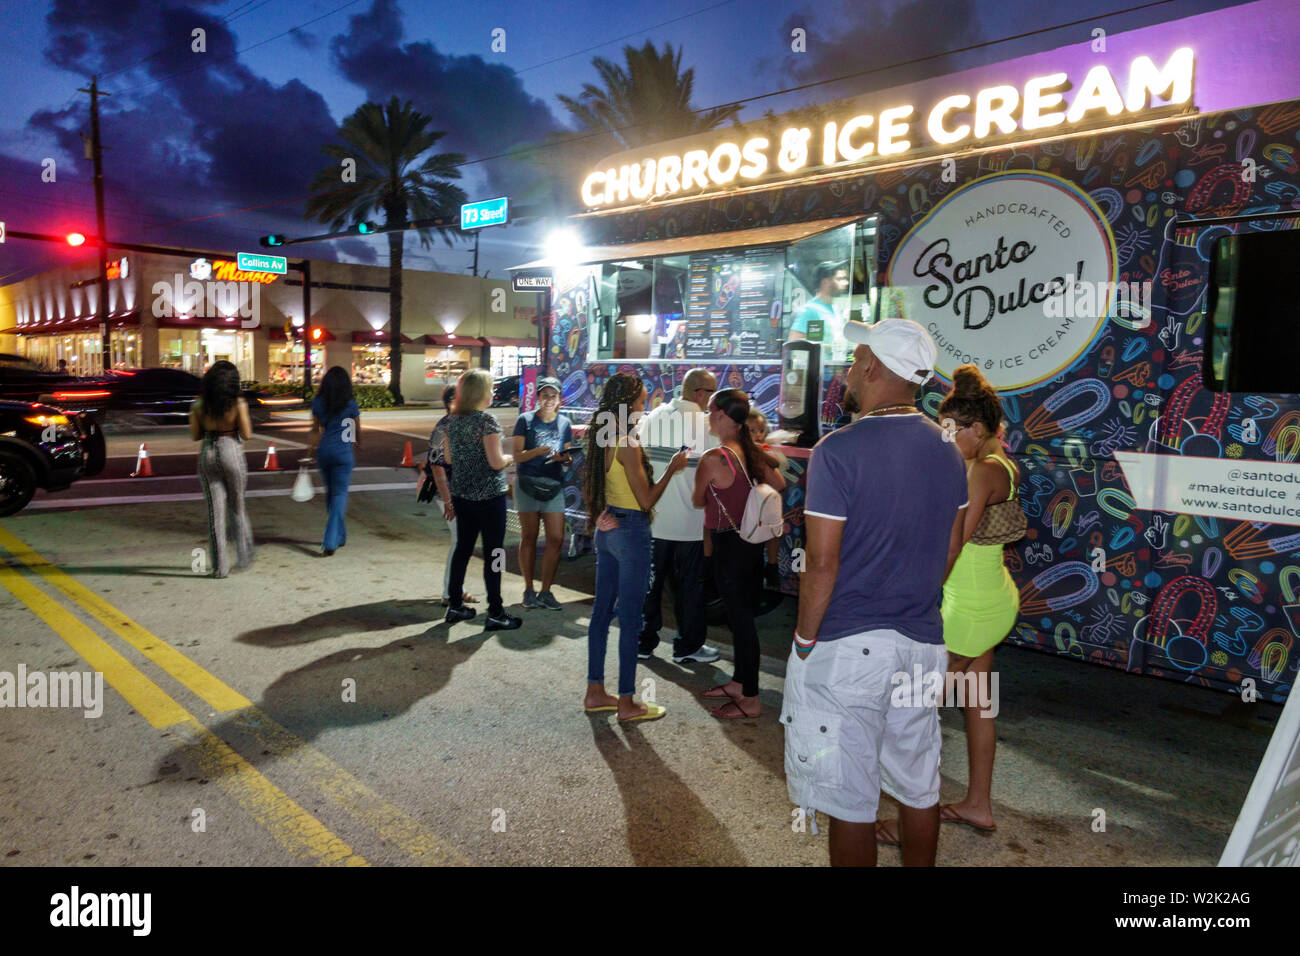 Miami Beach Florida,North Beach,Food Truck & Music Fest,notte sera crepuscolo,uomo ispanico uomini maschio,donna donne donne,residenti,churros,FL190704003 Foto Stock